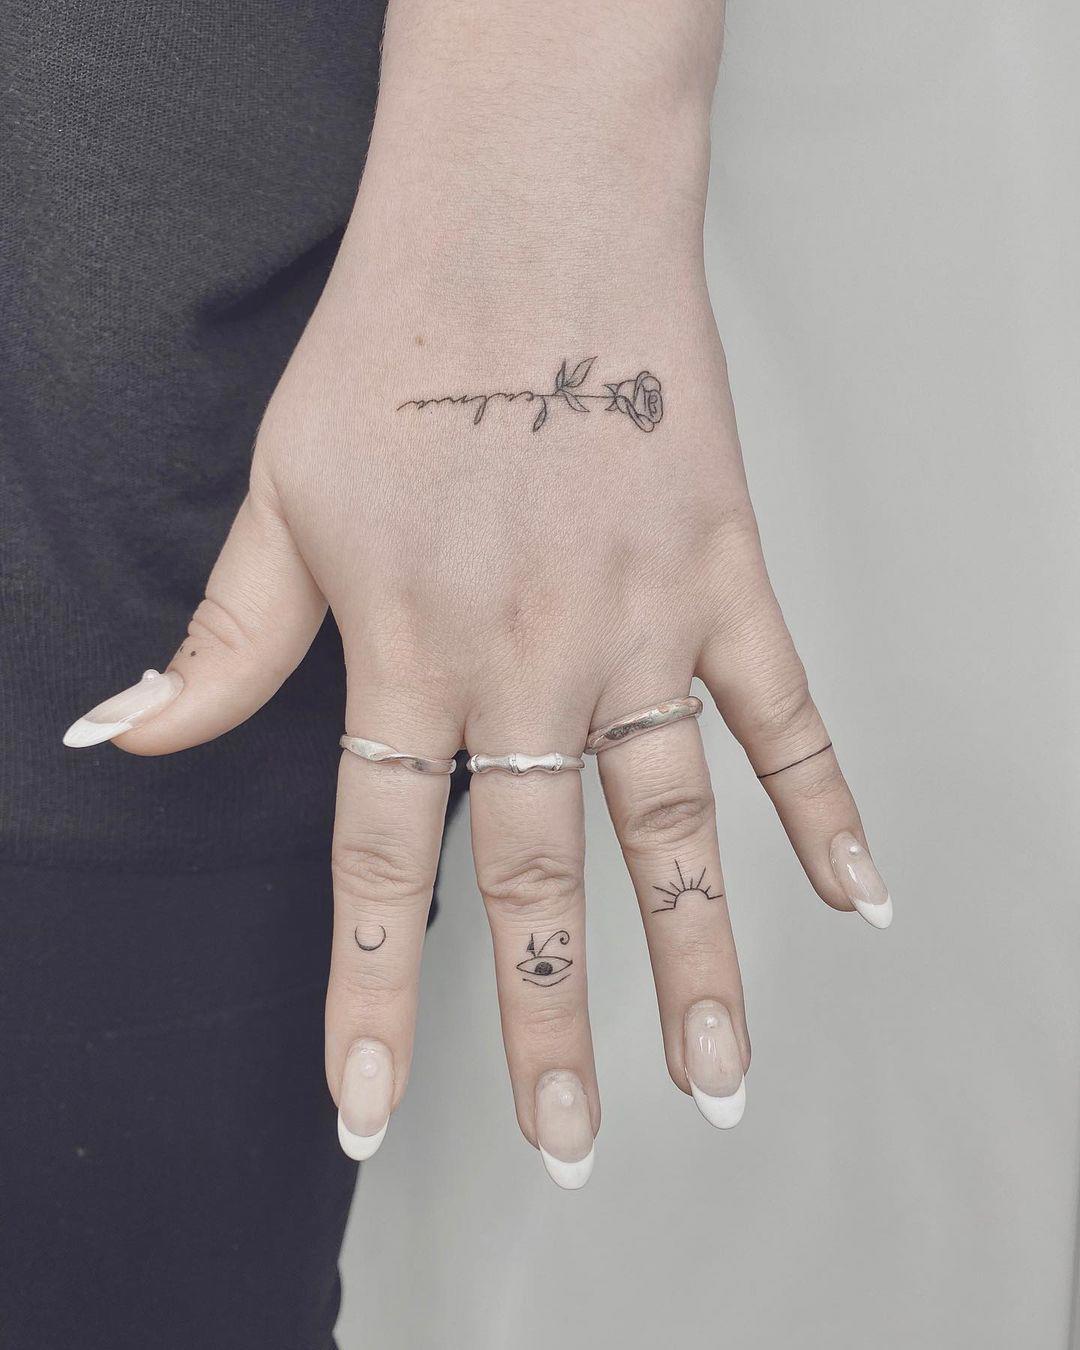 Tatuajes simbólicos en dedos y mano